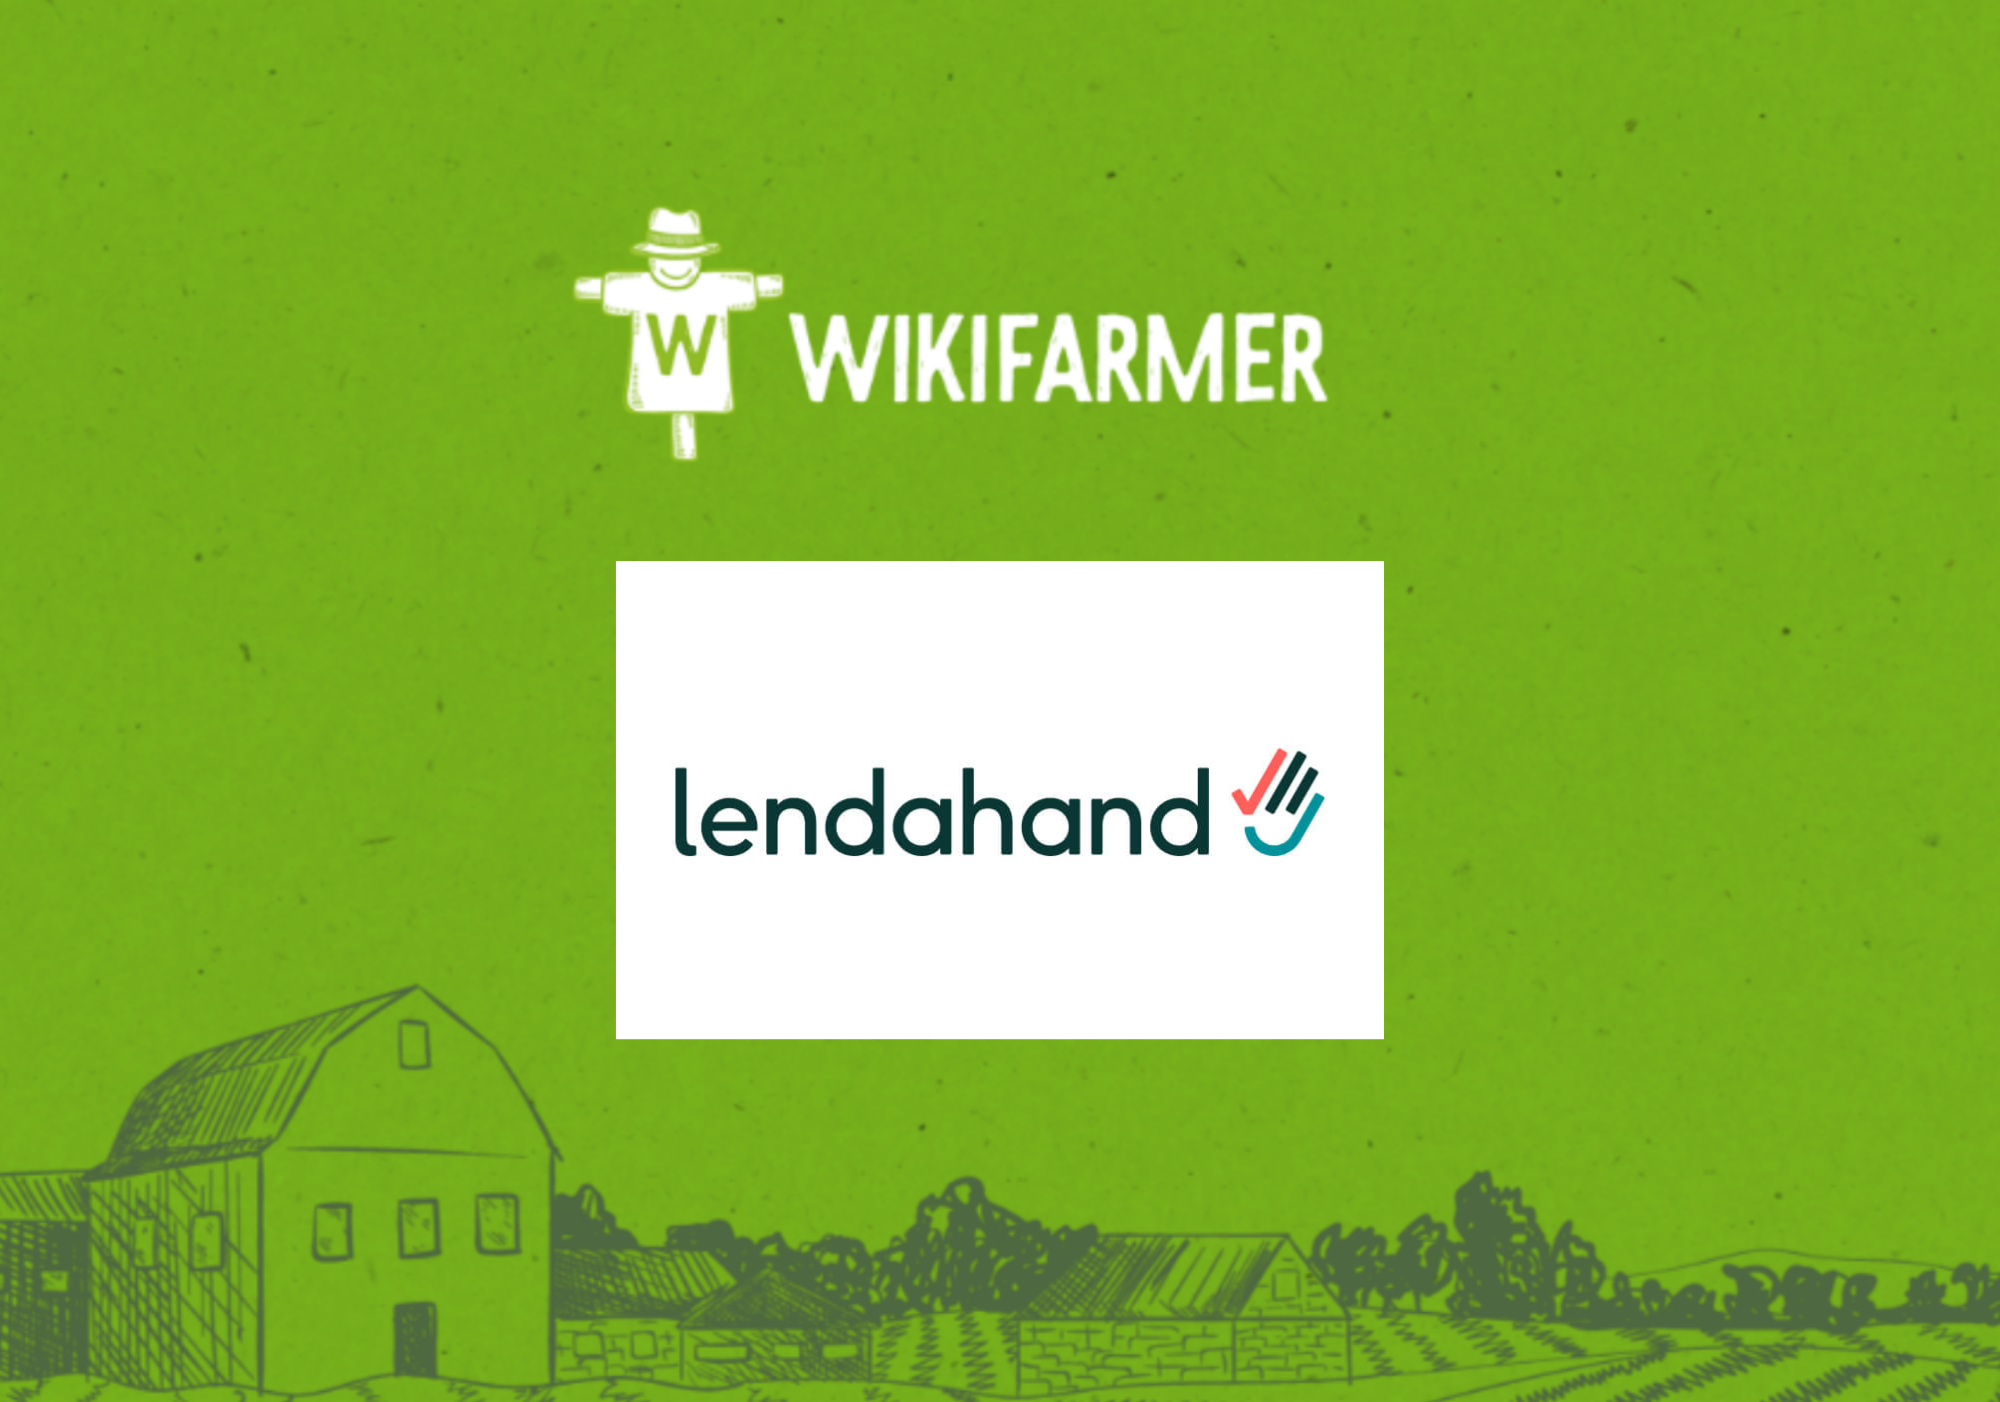 Partnership between Wikifarmer and Lendahand